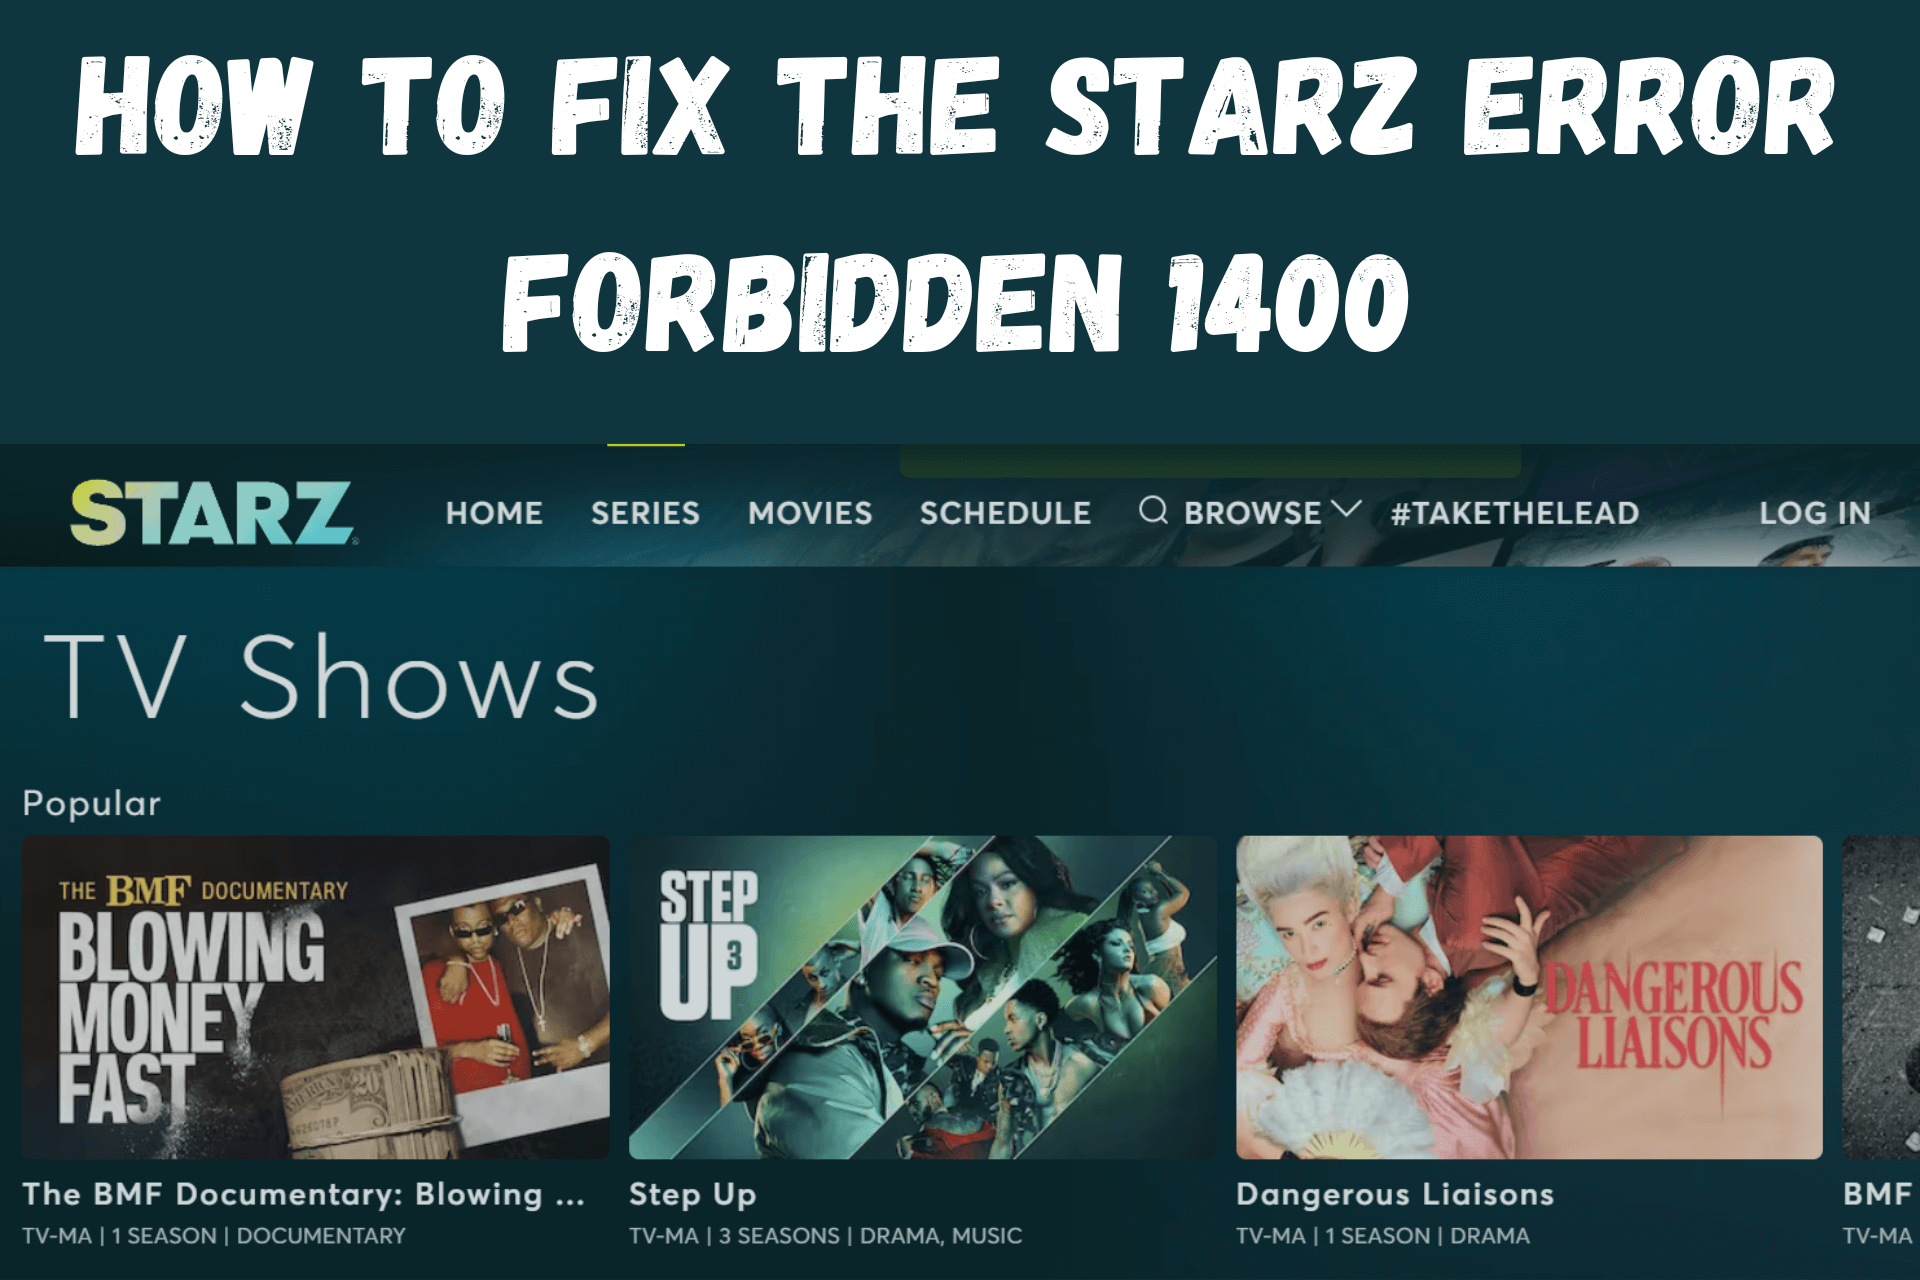 Starz Error Forbidden 1400